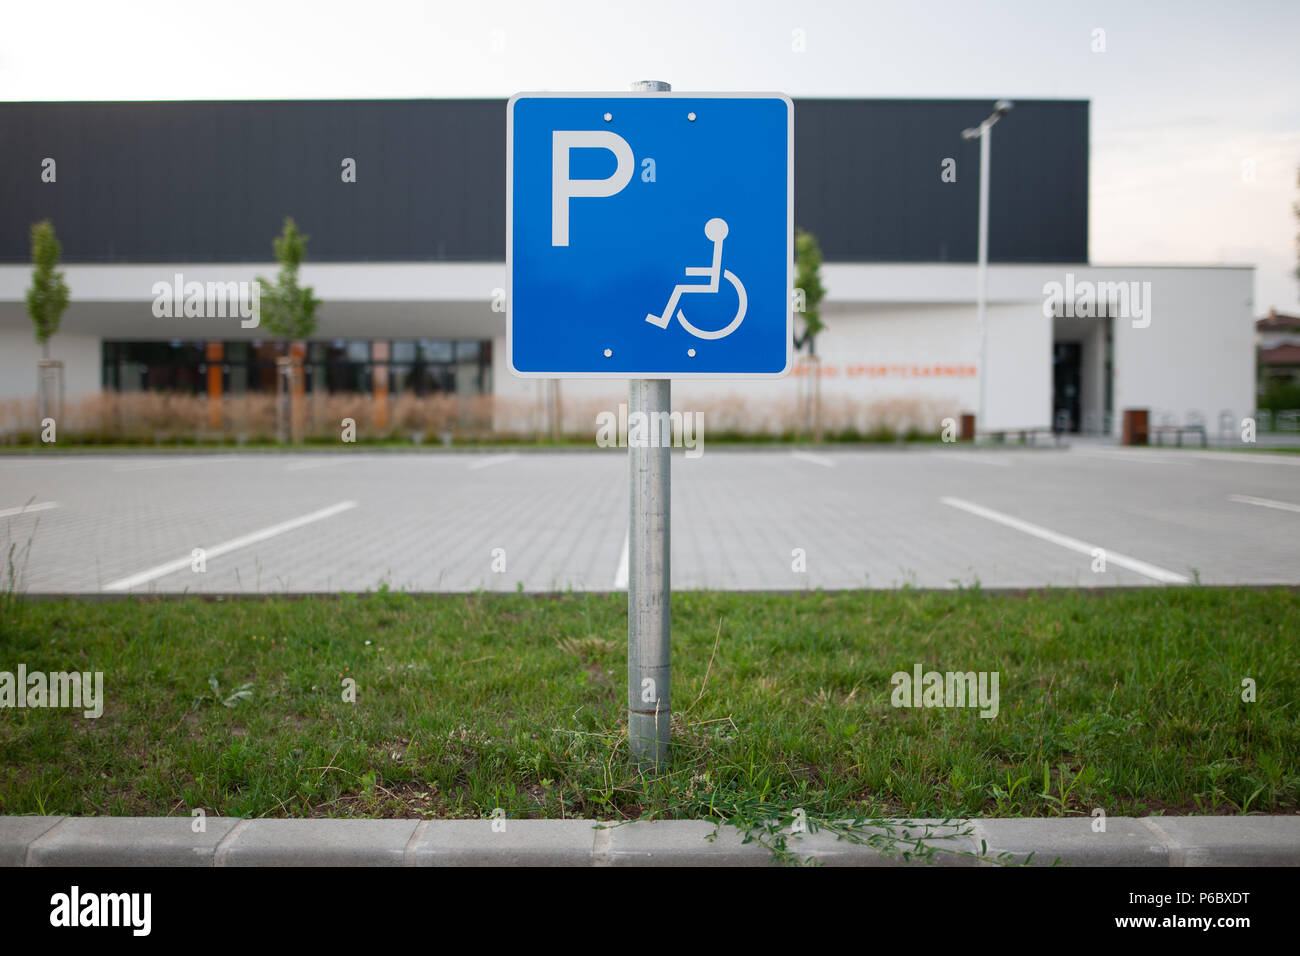 Deaktiviert das verkehrsschild an einen leeren Parkplatz stellen handicap Parkplätze ohne Auto oder Personen Stockfoto